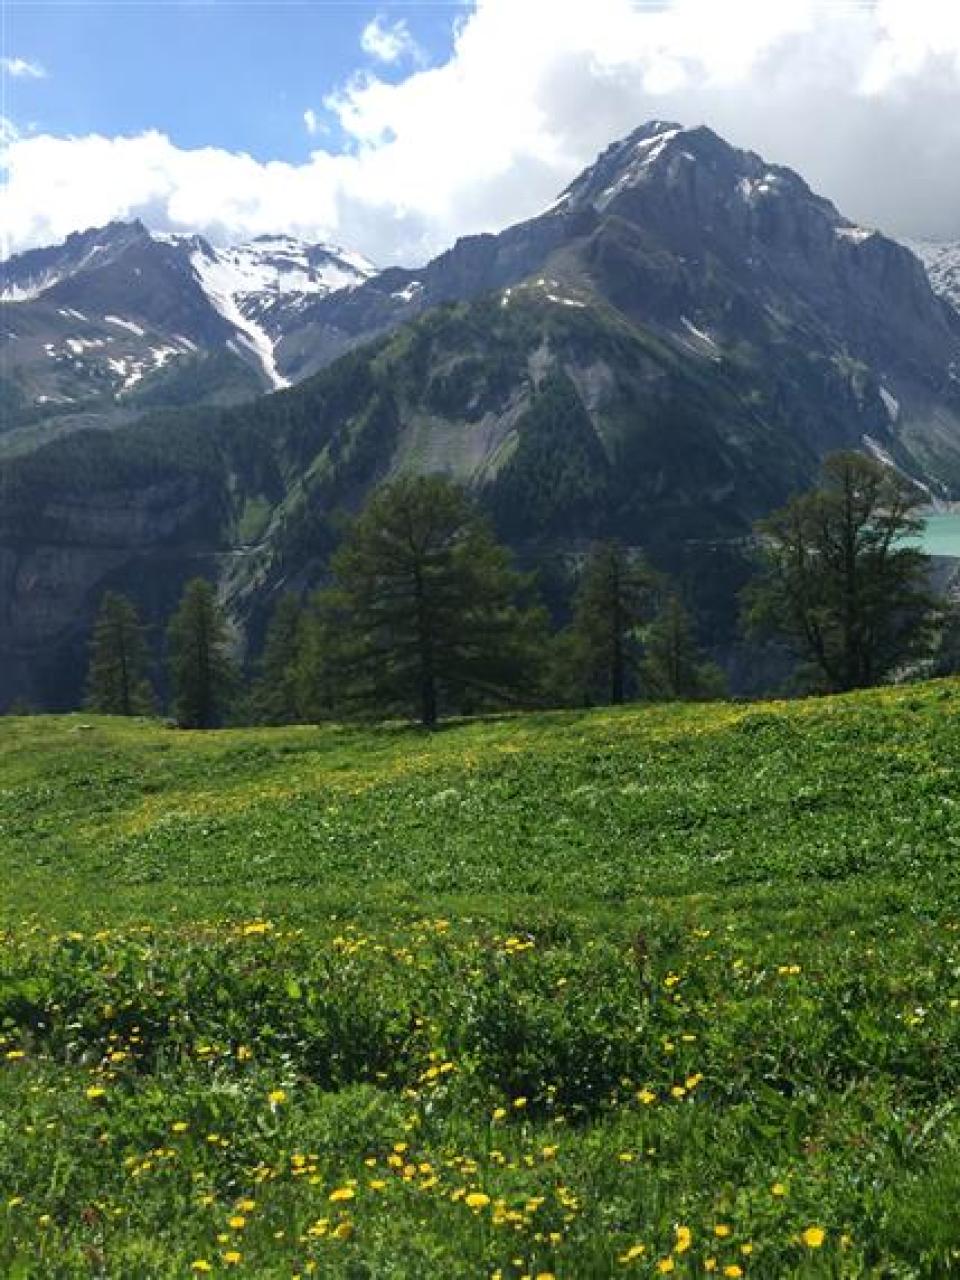 L’alpage de la famille Mudry se trouve au-dessus du barrage du Rawyl et du lac de Zeuzier près d’Anzère en Valais.